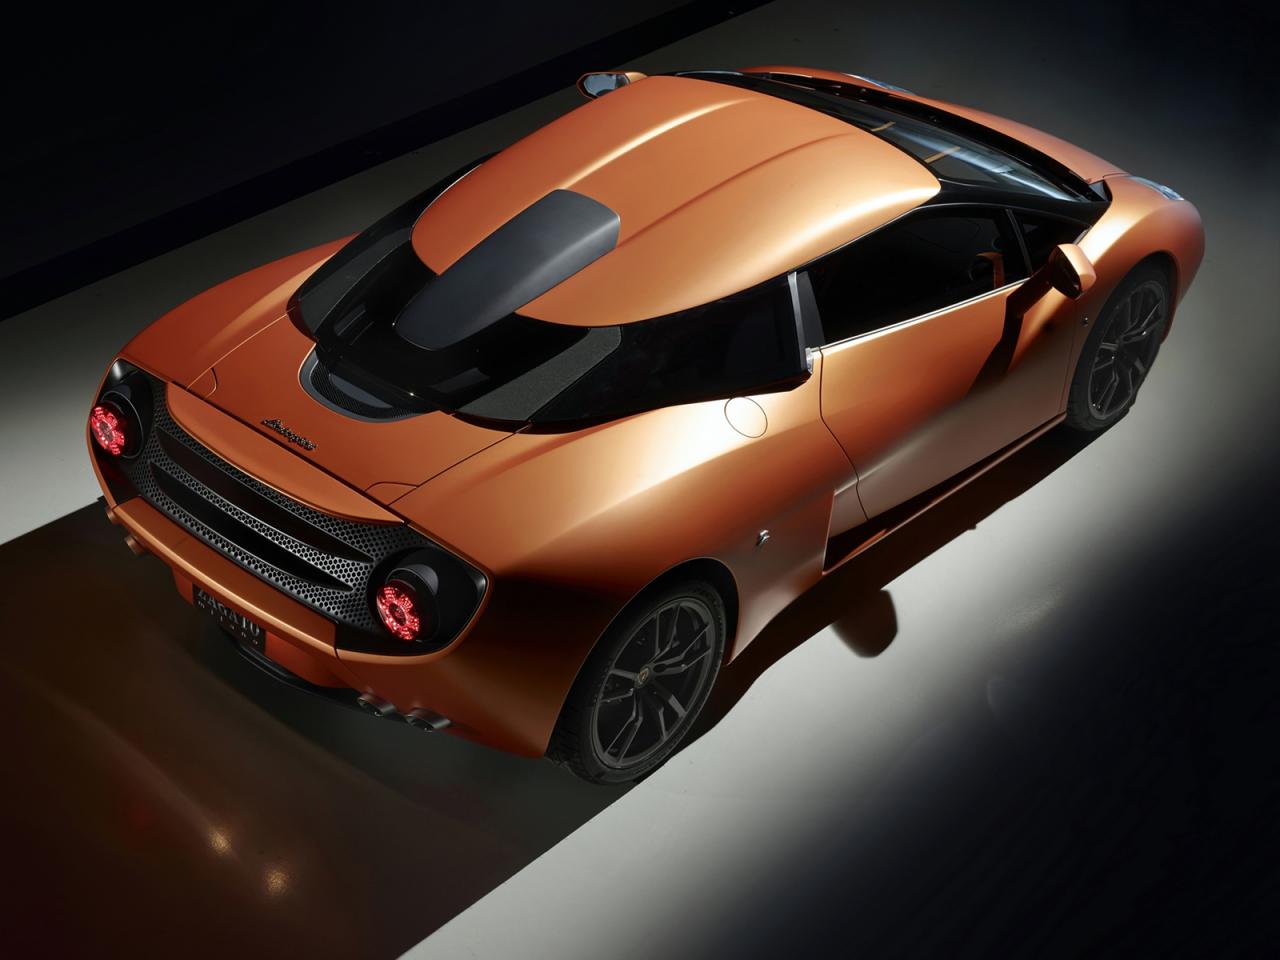 Προοπτικές παραγωγής για την εξωτική Lamborghini 5-95 Zagato